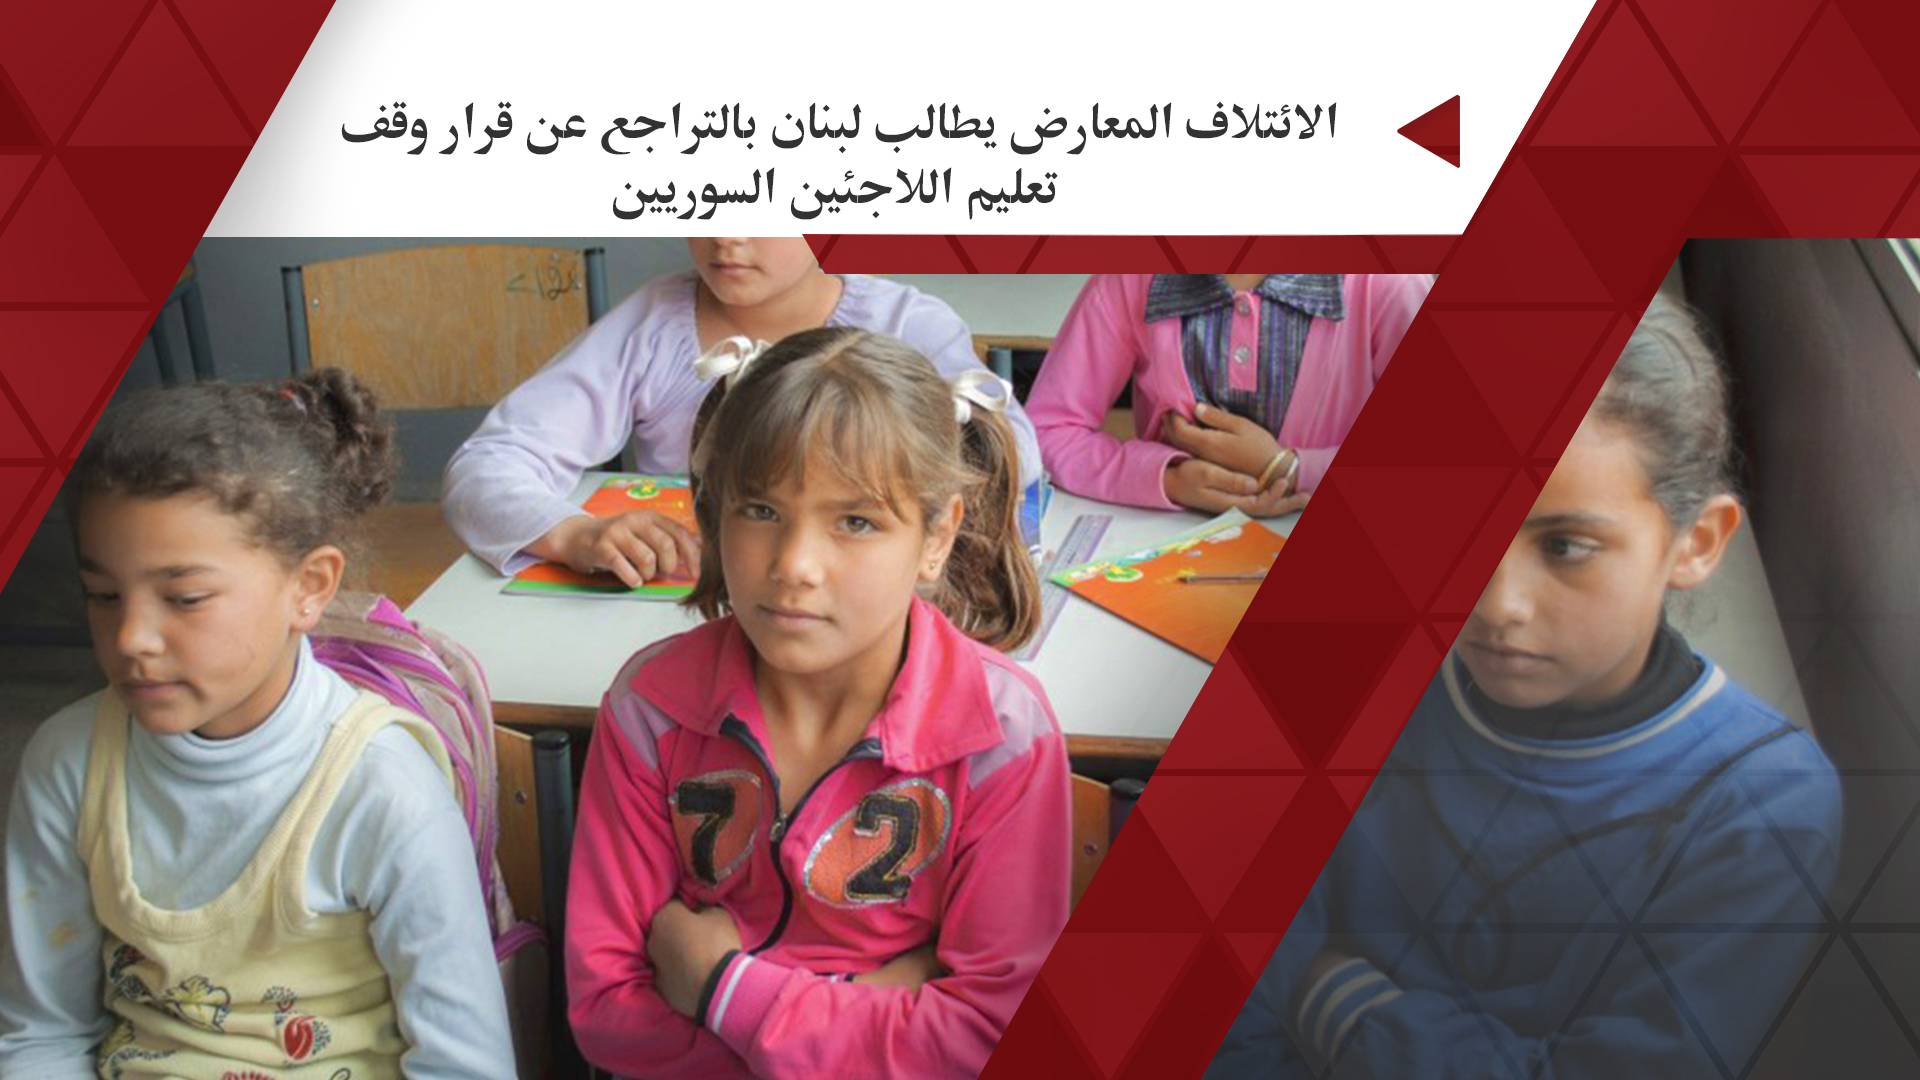 الائتلاف المعارض يطالب لبنان بالتراجع عن قرار وقف تعليم اللاجئين السوريين